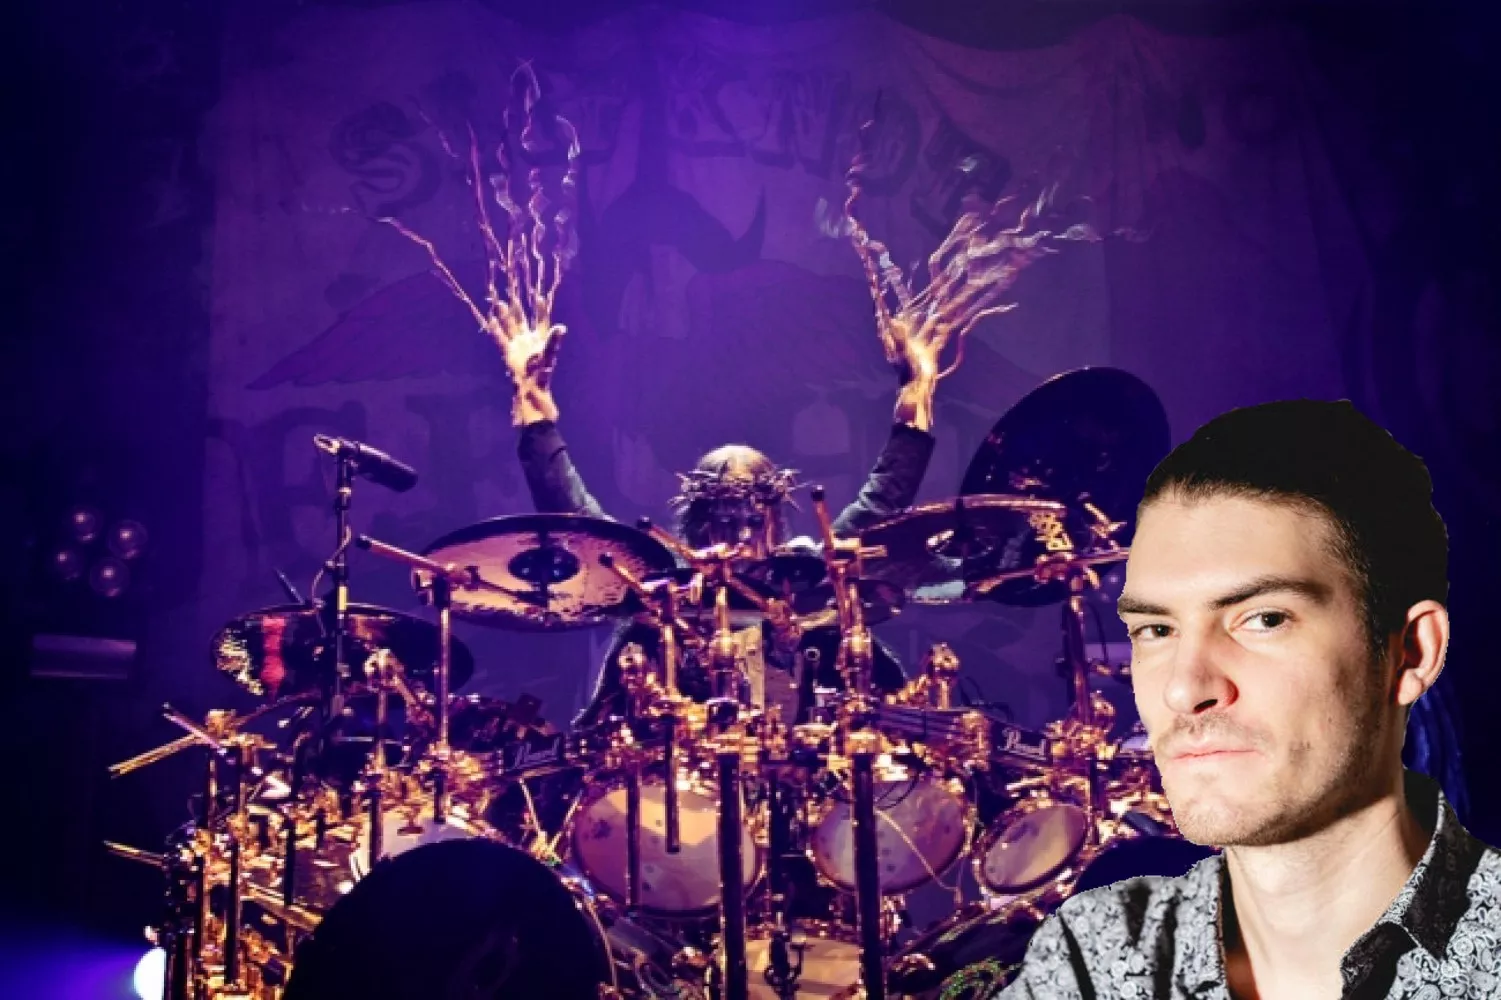 MINDEORD: Joey Jordison – et uforligneligt forbillede for trommeslagere